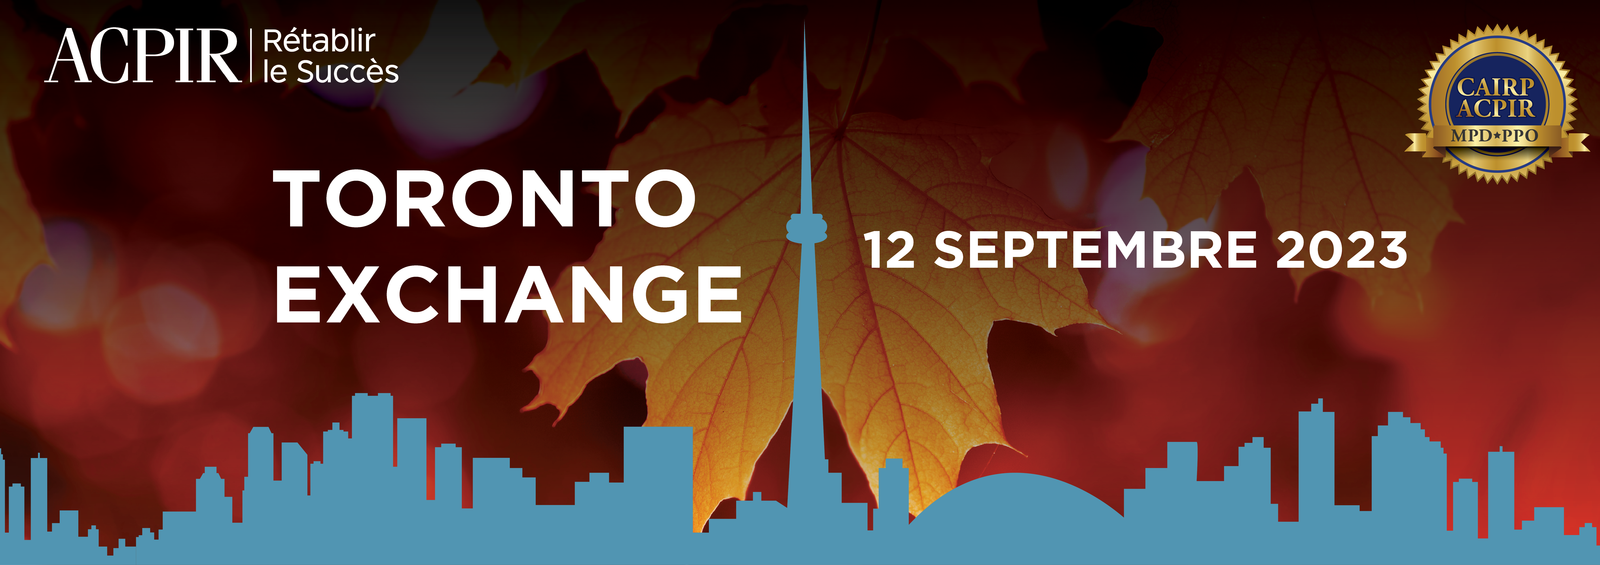 Event_Images/Toronto_Exchange_-_Sept_12_2023_-_FR.png